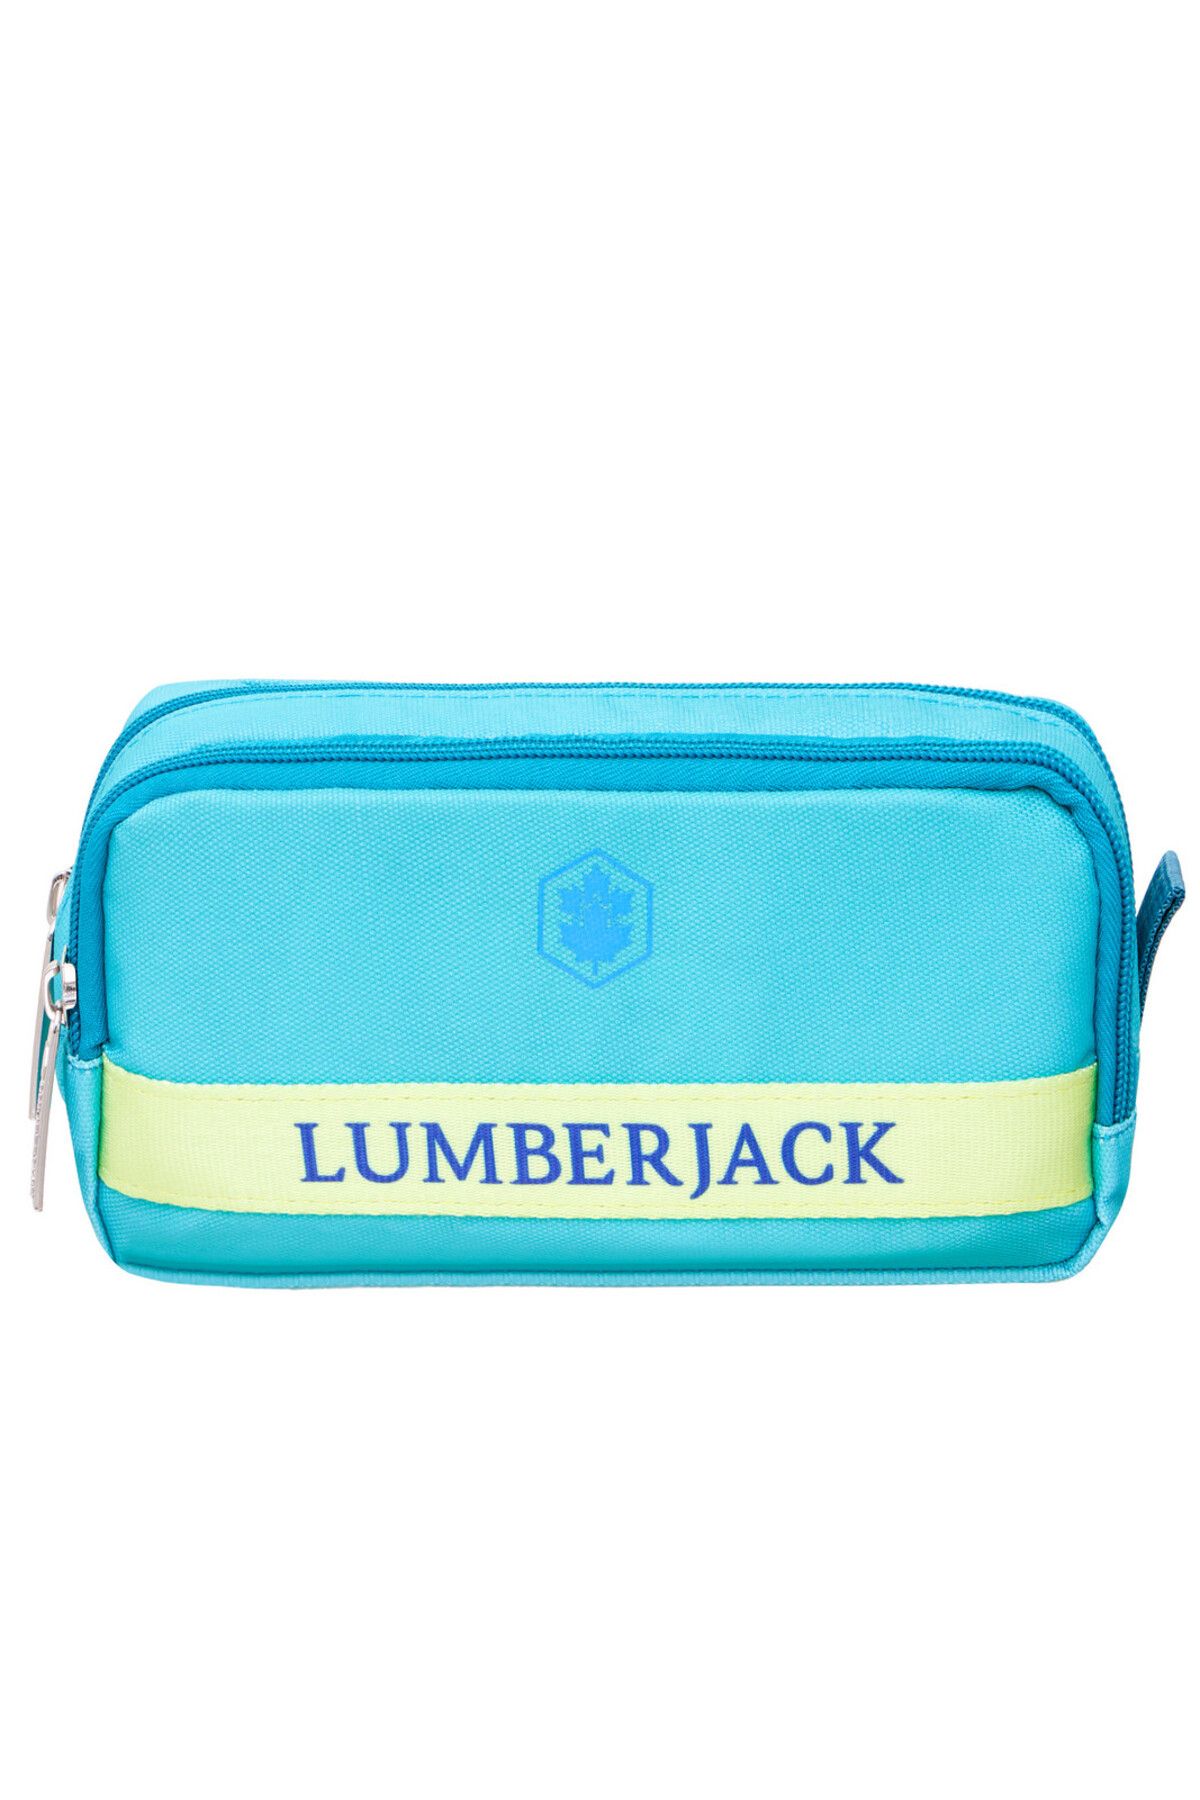 Lumberjack Lmklk23020 Kalem Çantası